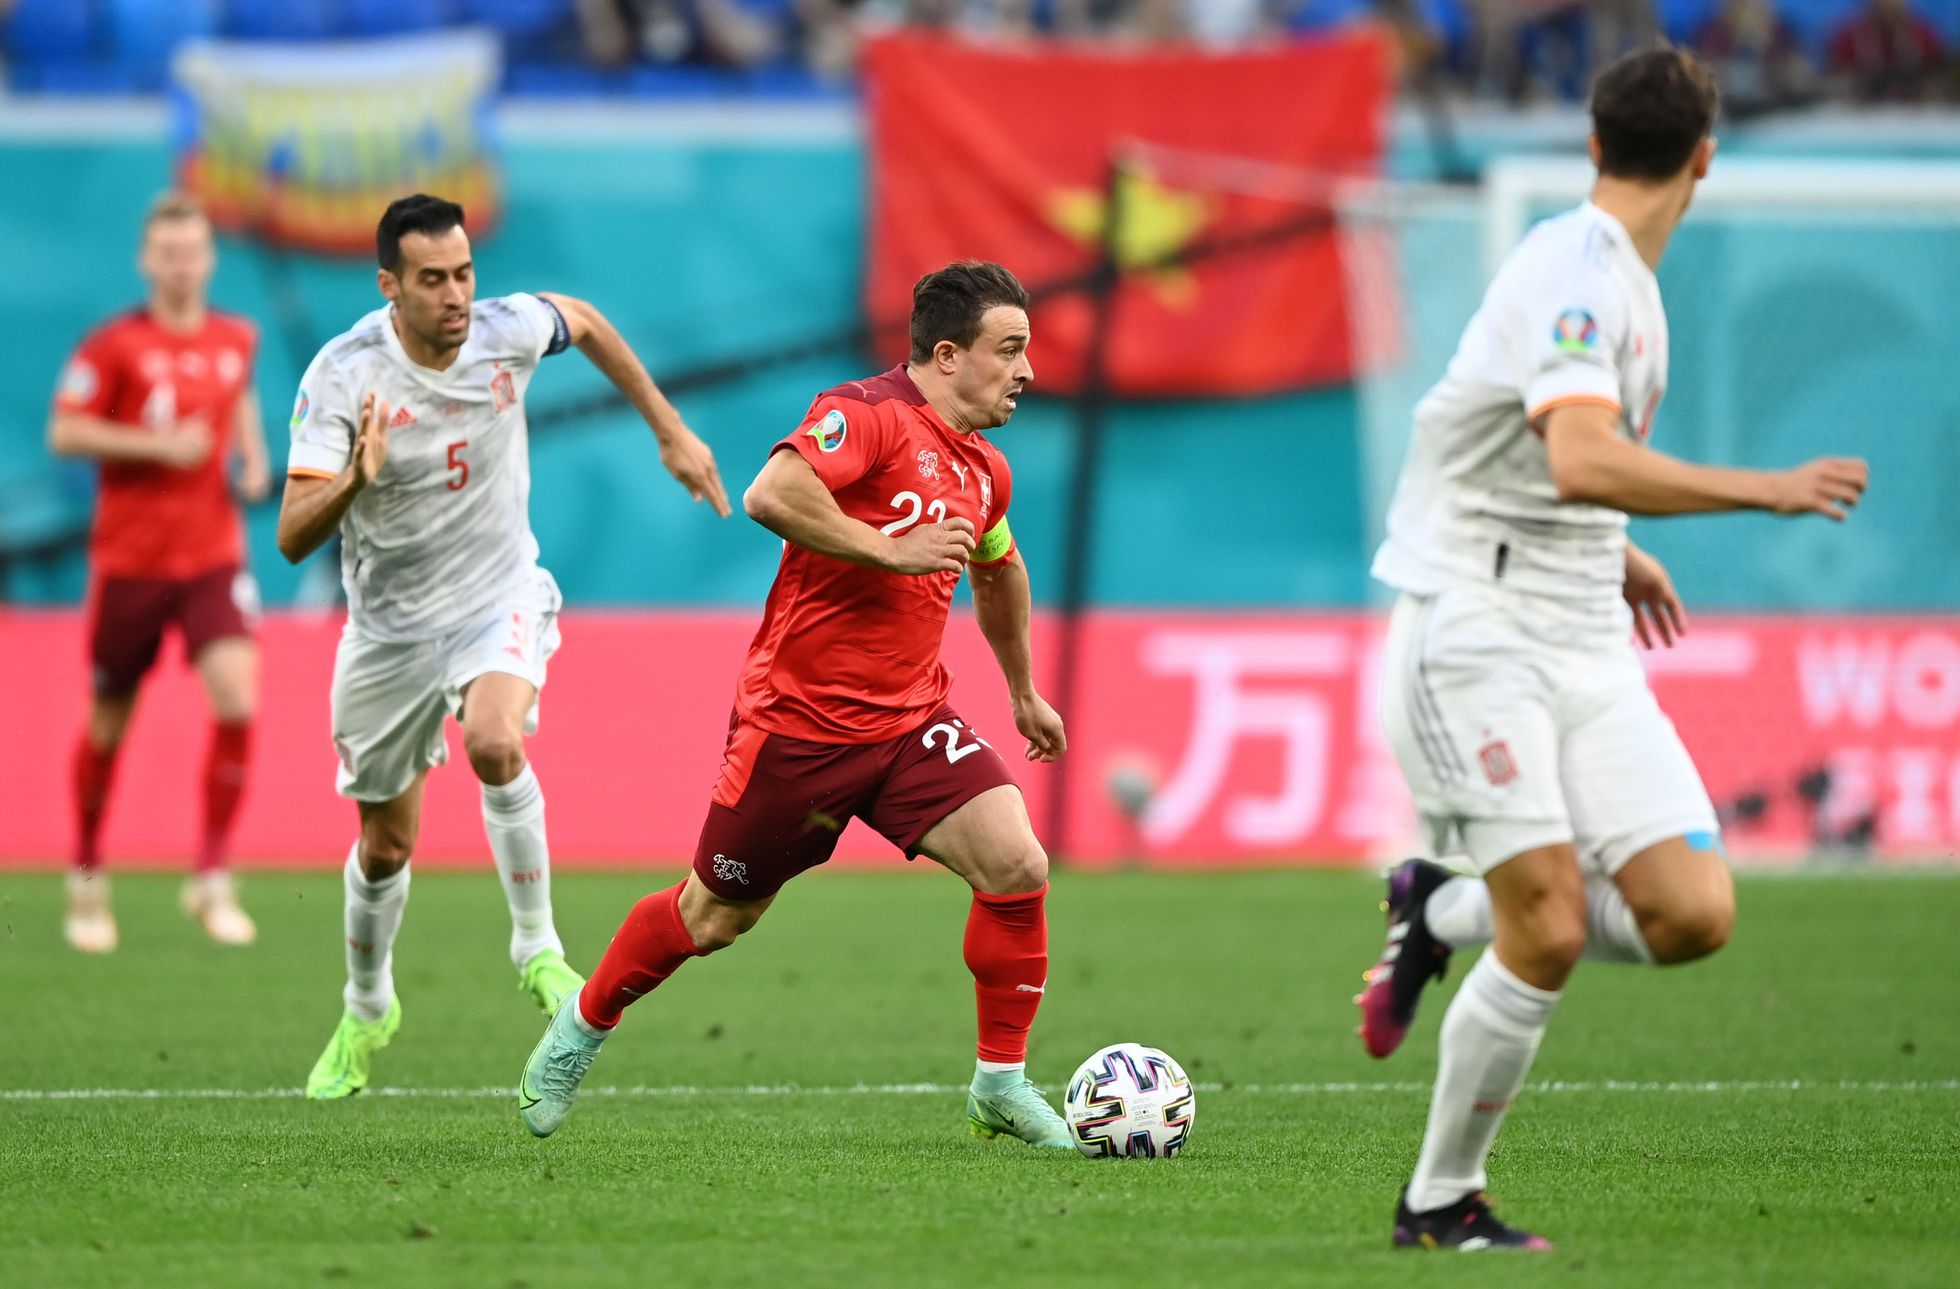 Ελβετία – Ισπανία 1-1: Ο Σακίρι μπορεί να σκοράρει με κάθε τρόπο (Vid)